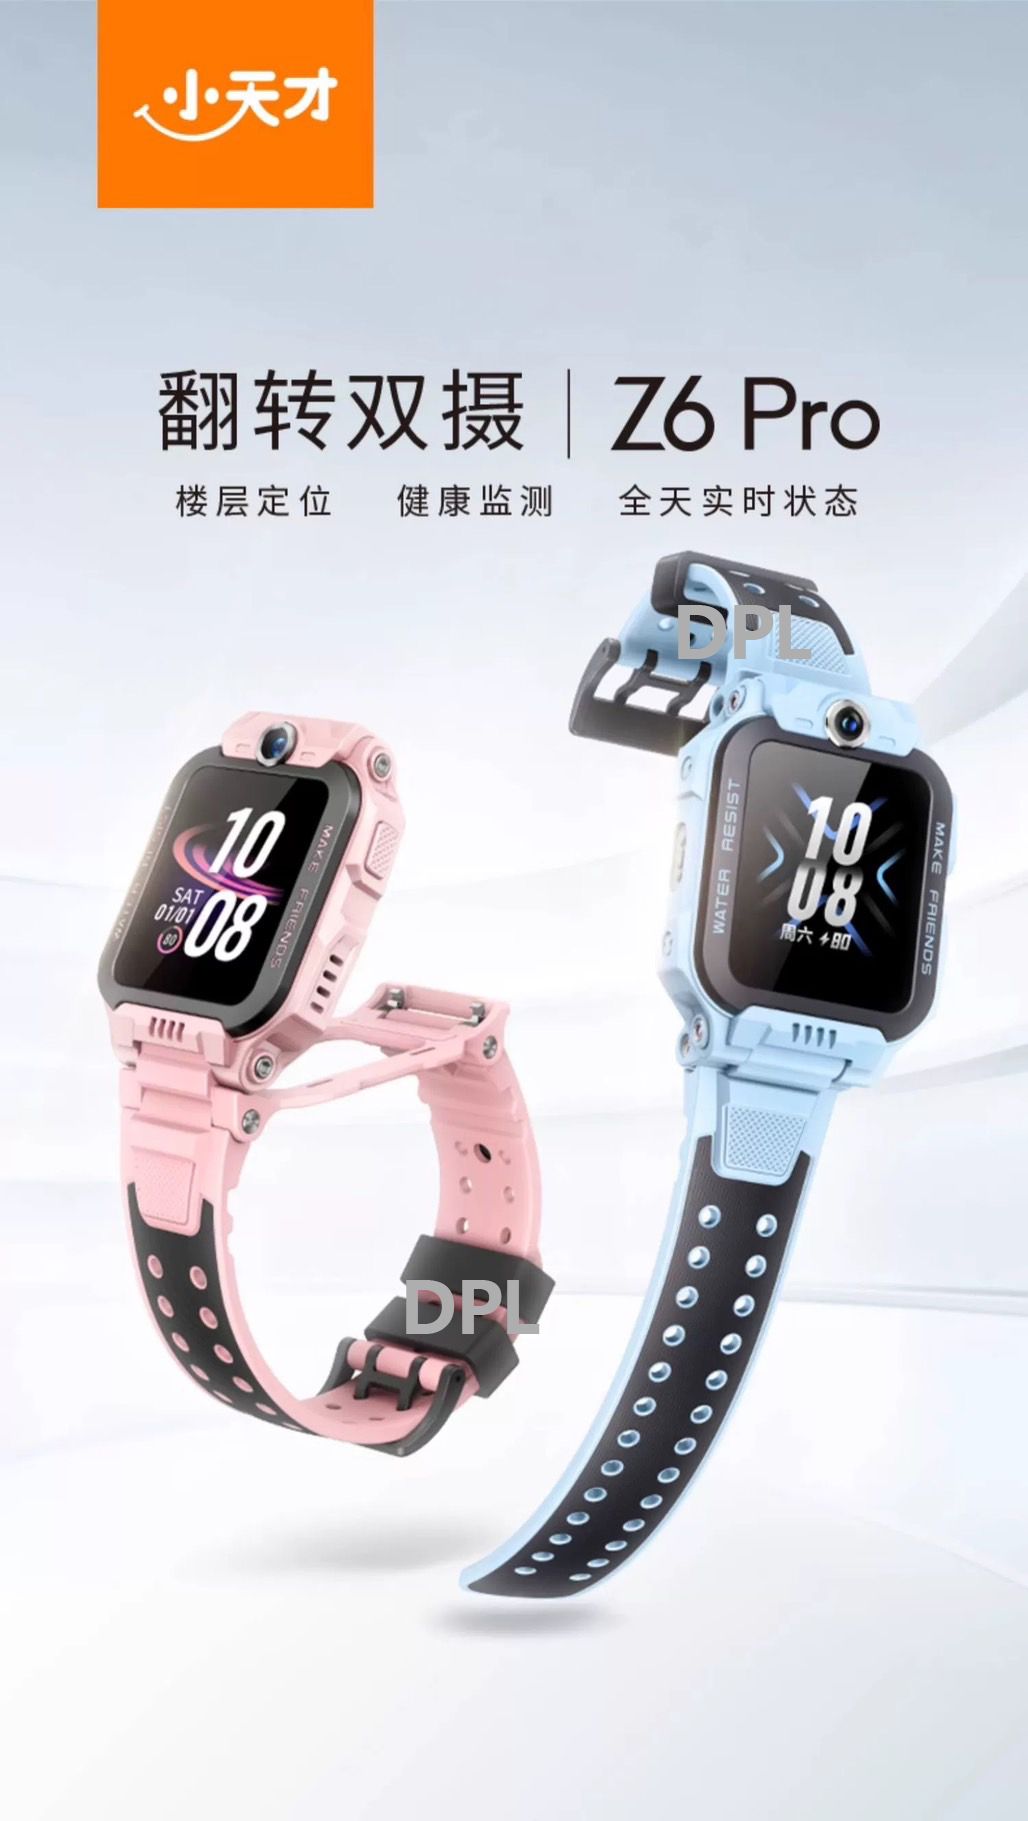 2024 小天才 兒童智慧型手錶 Z6 PRO 體溫監測/視頻拍照雙攝 定位手錶 預購